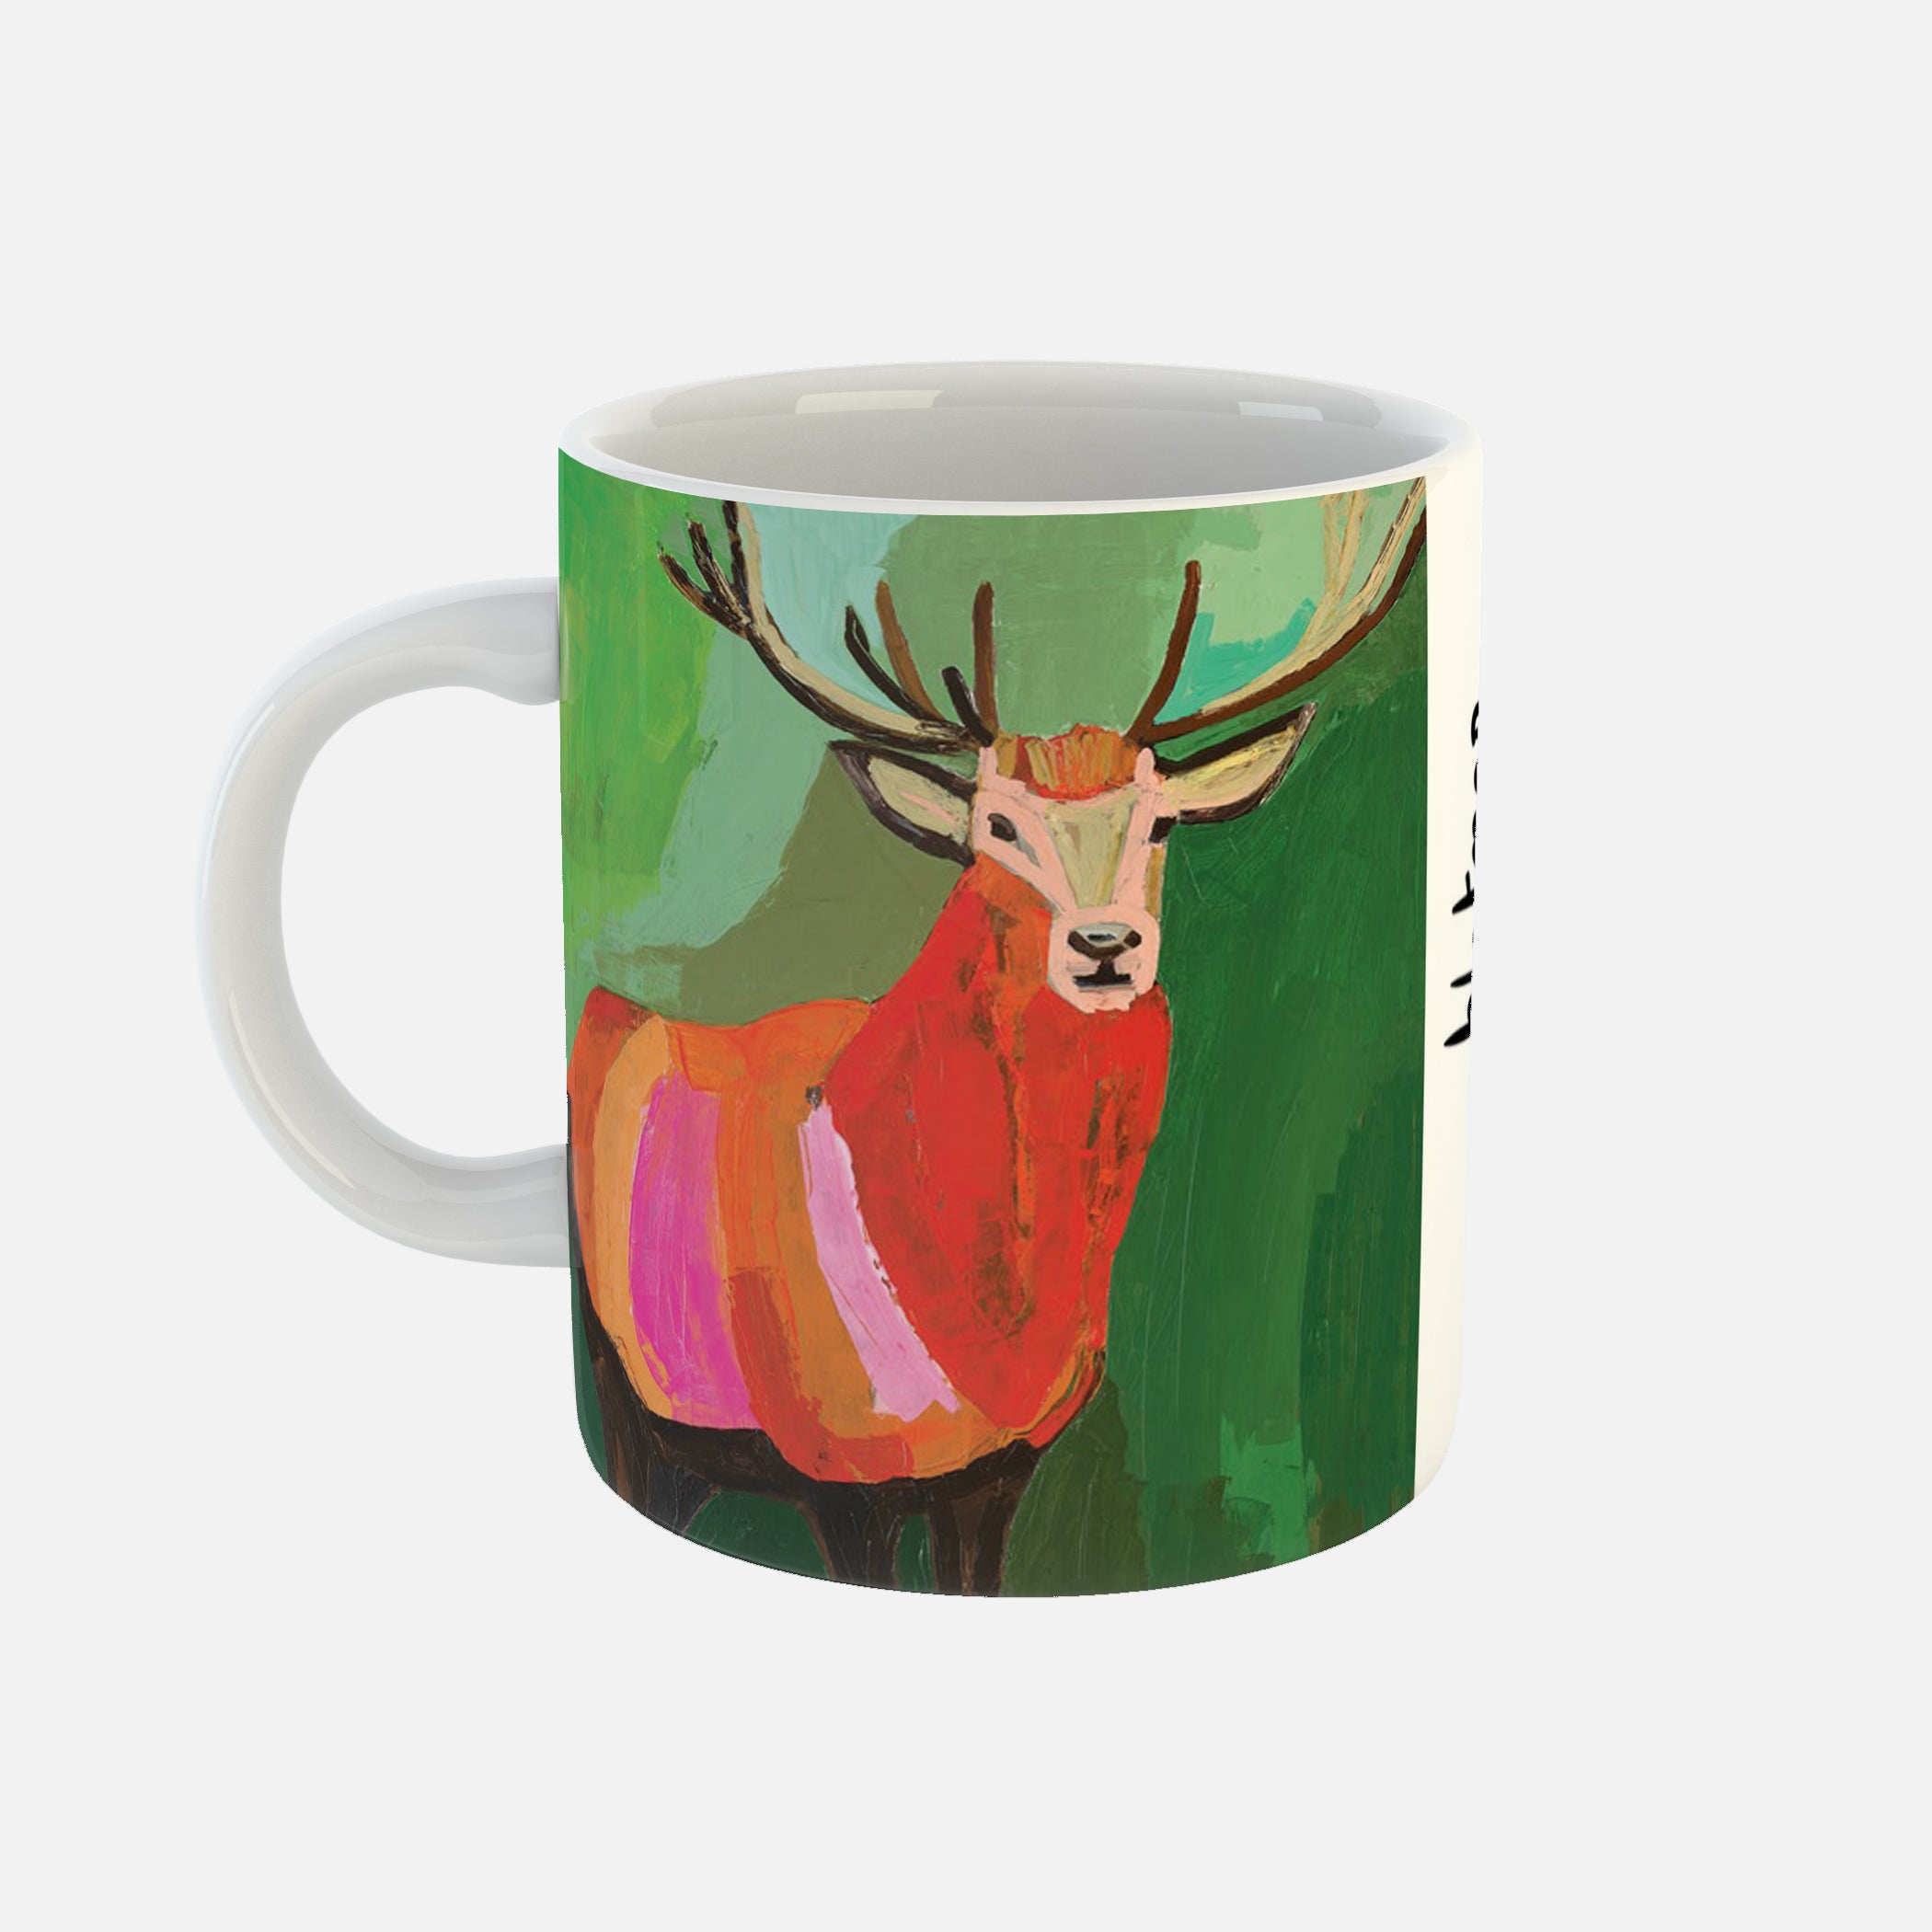 Boo - Ceramic Mug